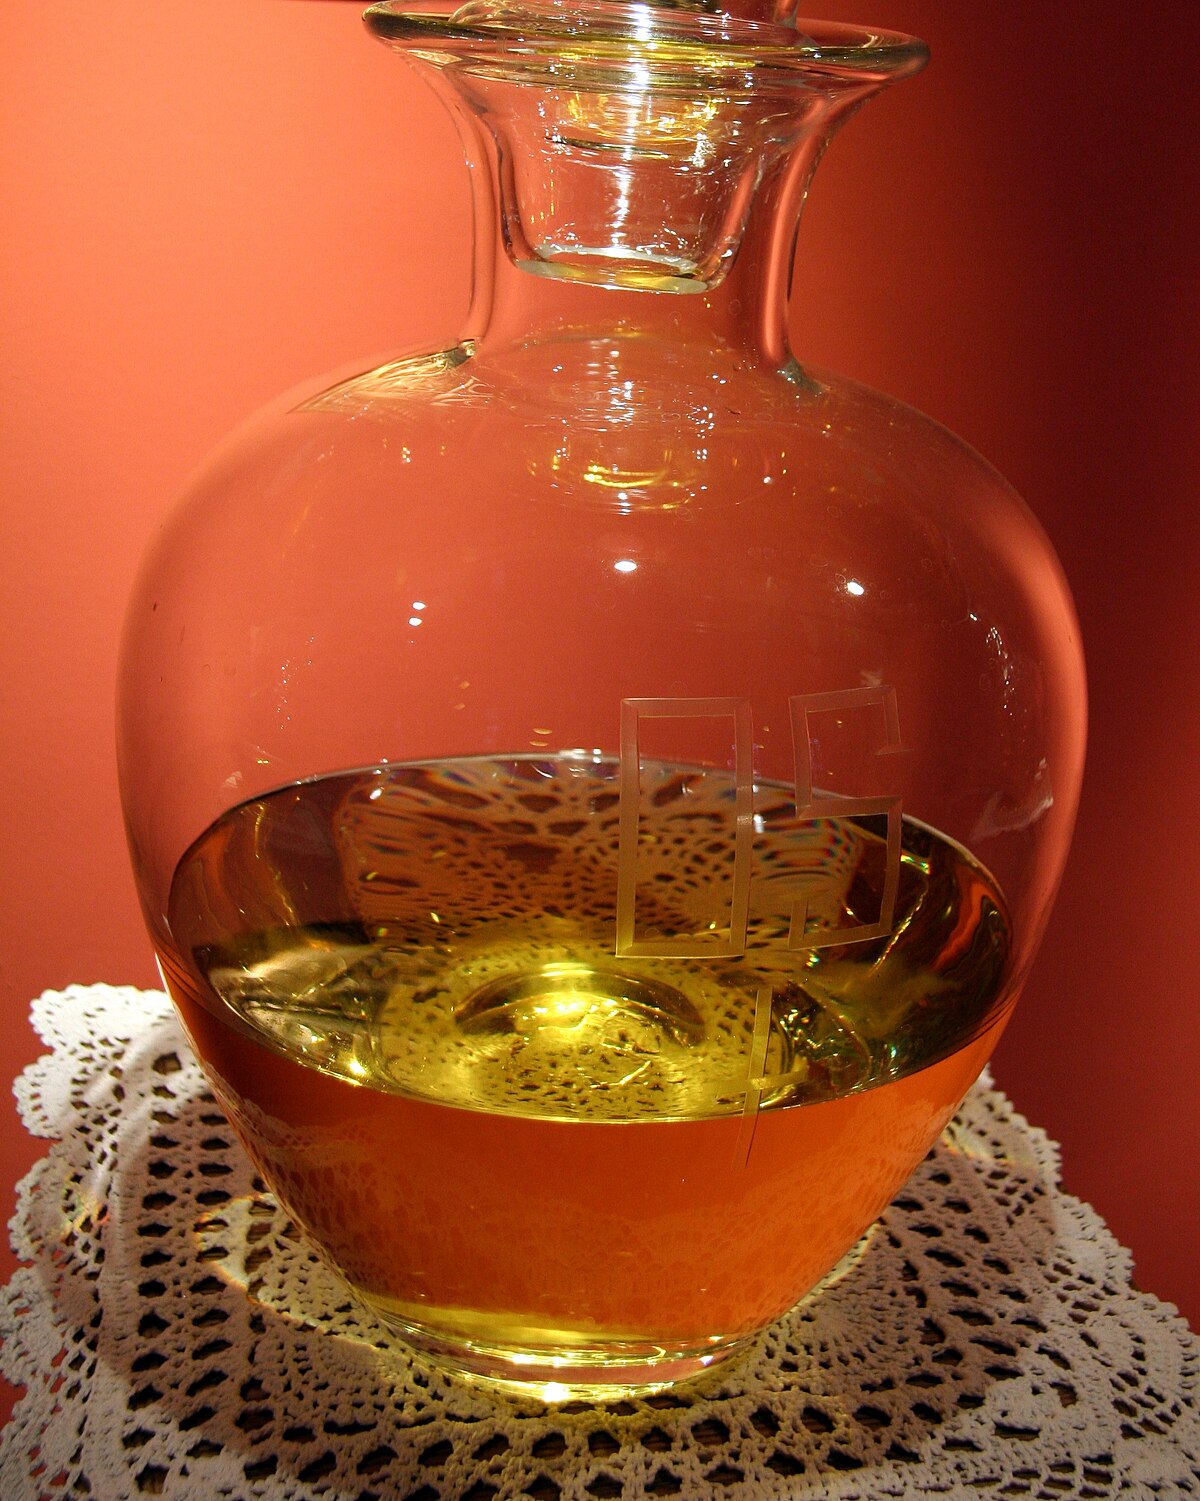 Lámpara de aceite - Wikipedia, la enciclopedia libre